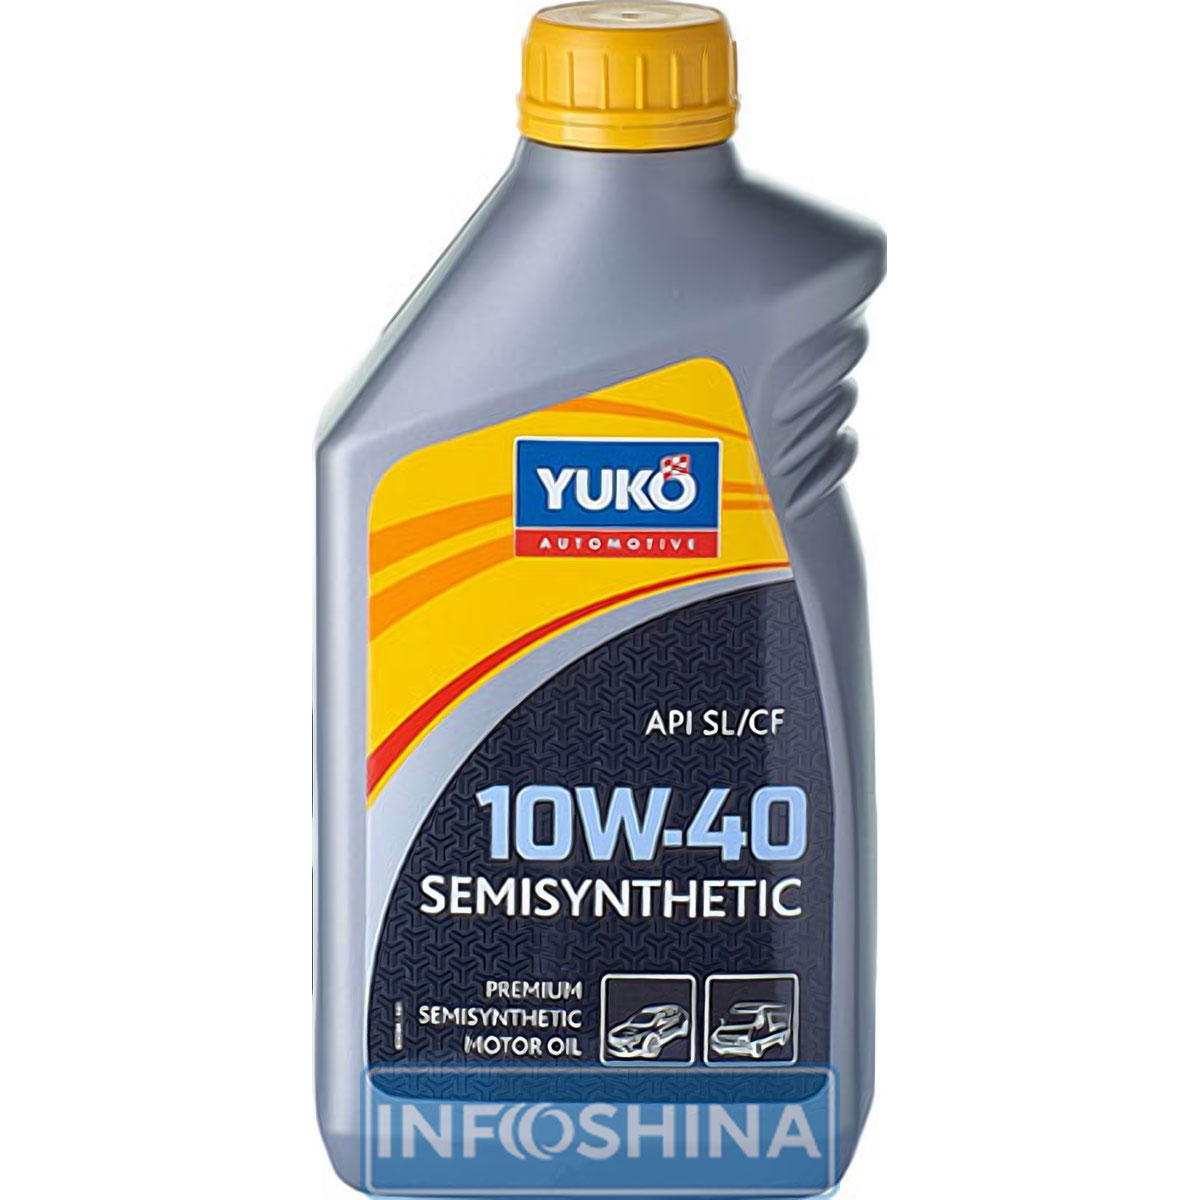 Yuko Semisynthetic 10W-40 API SL/CF